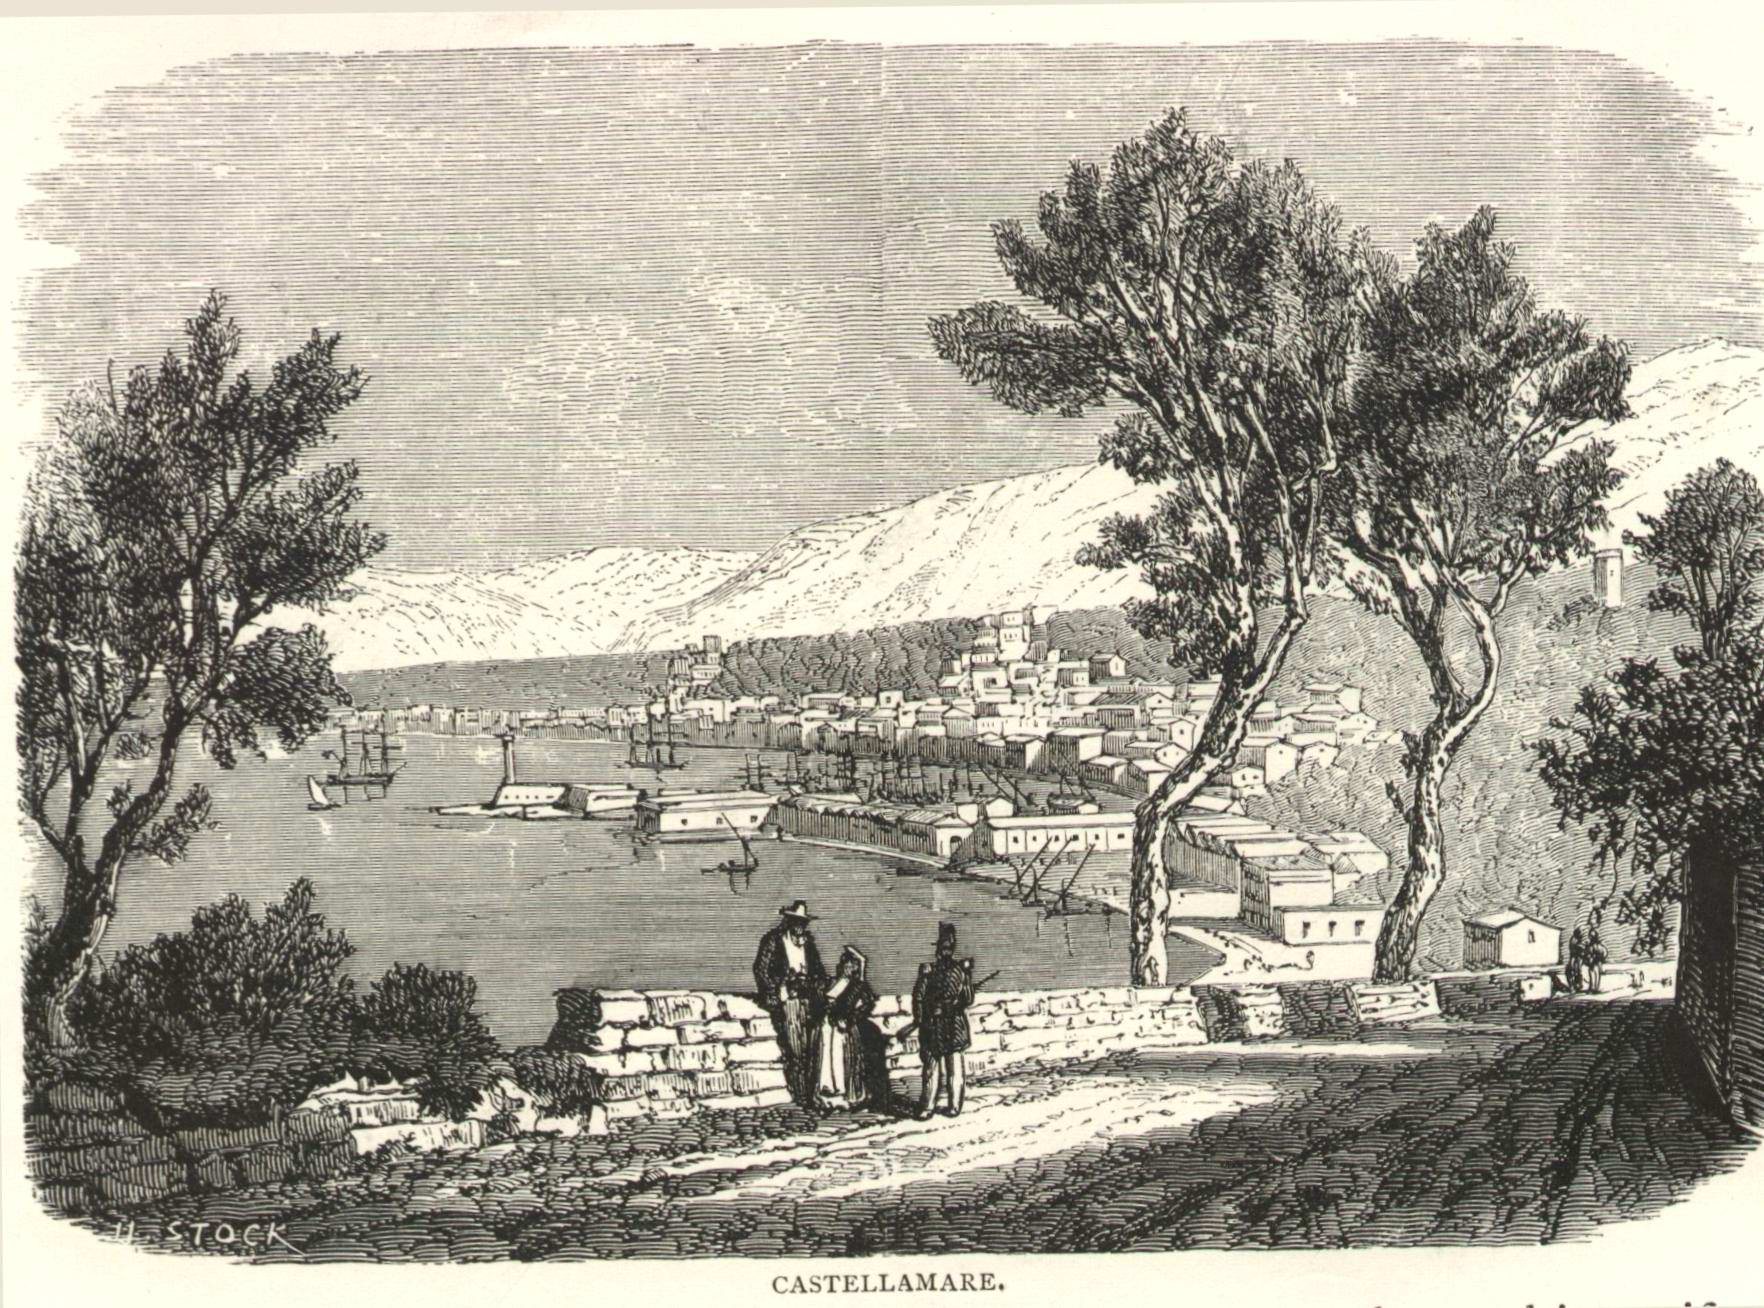 Castellamare nel 1860 (coll. Gaetano Fontana)